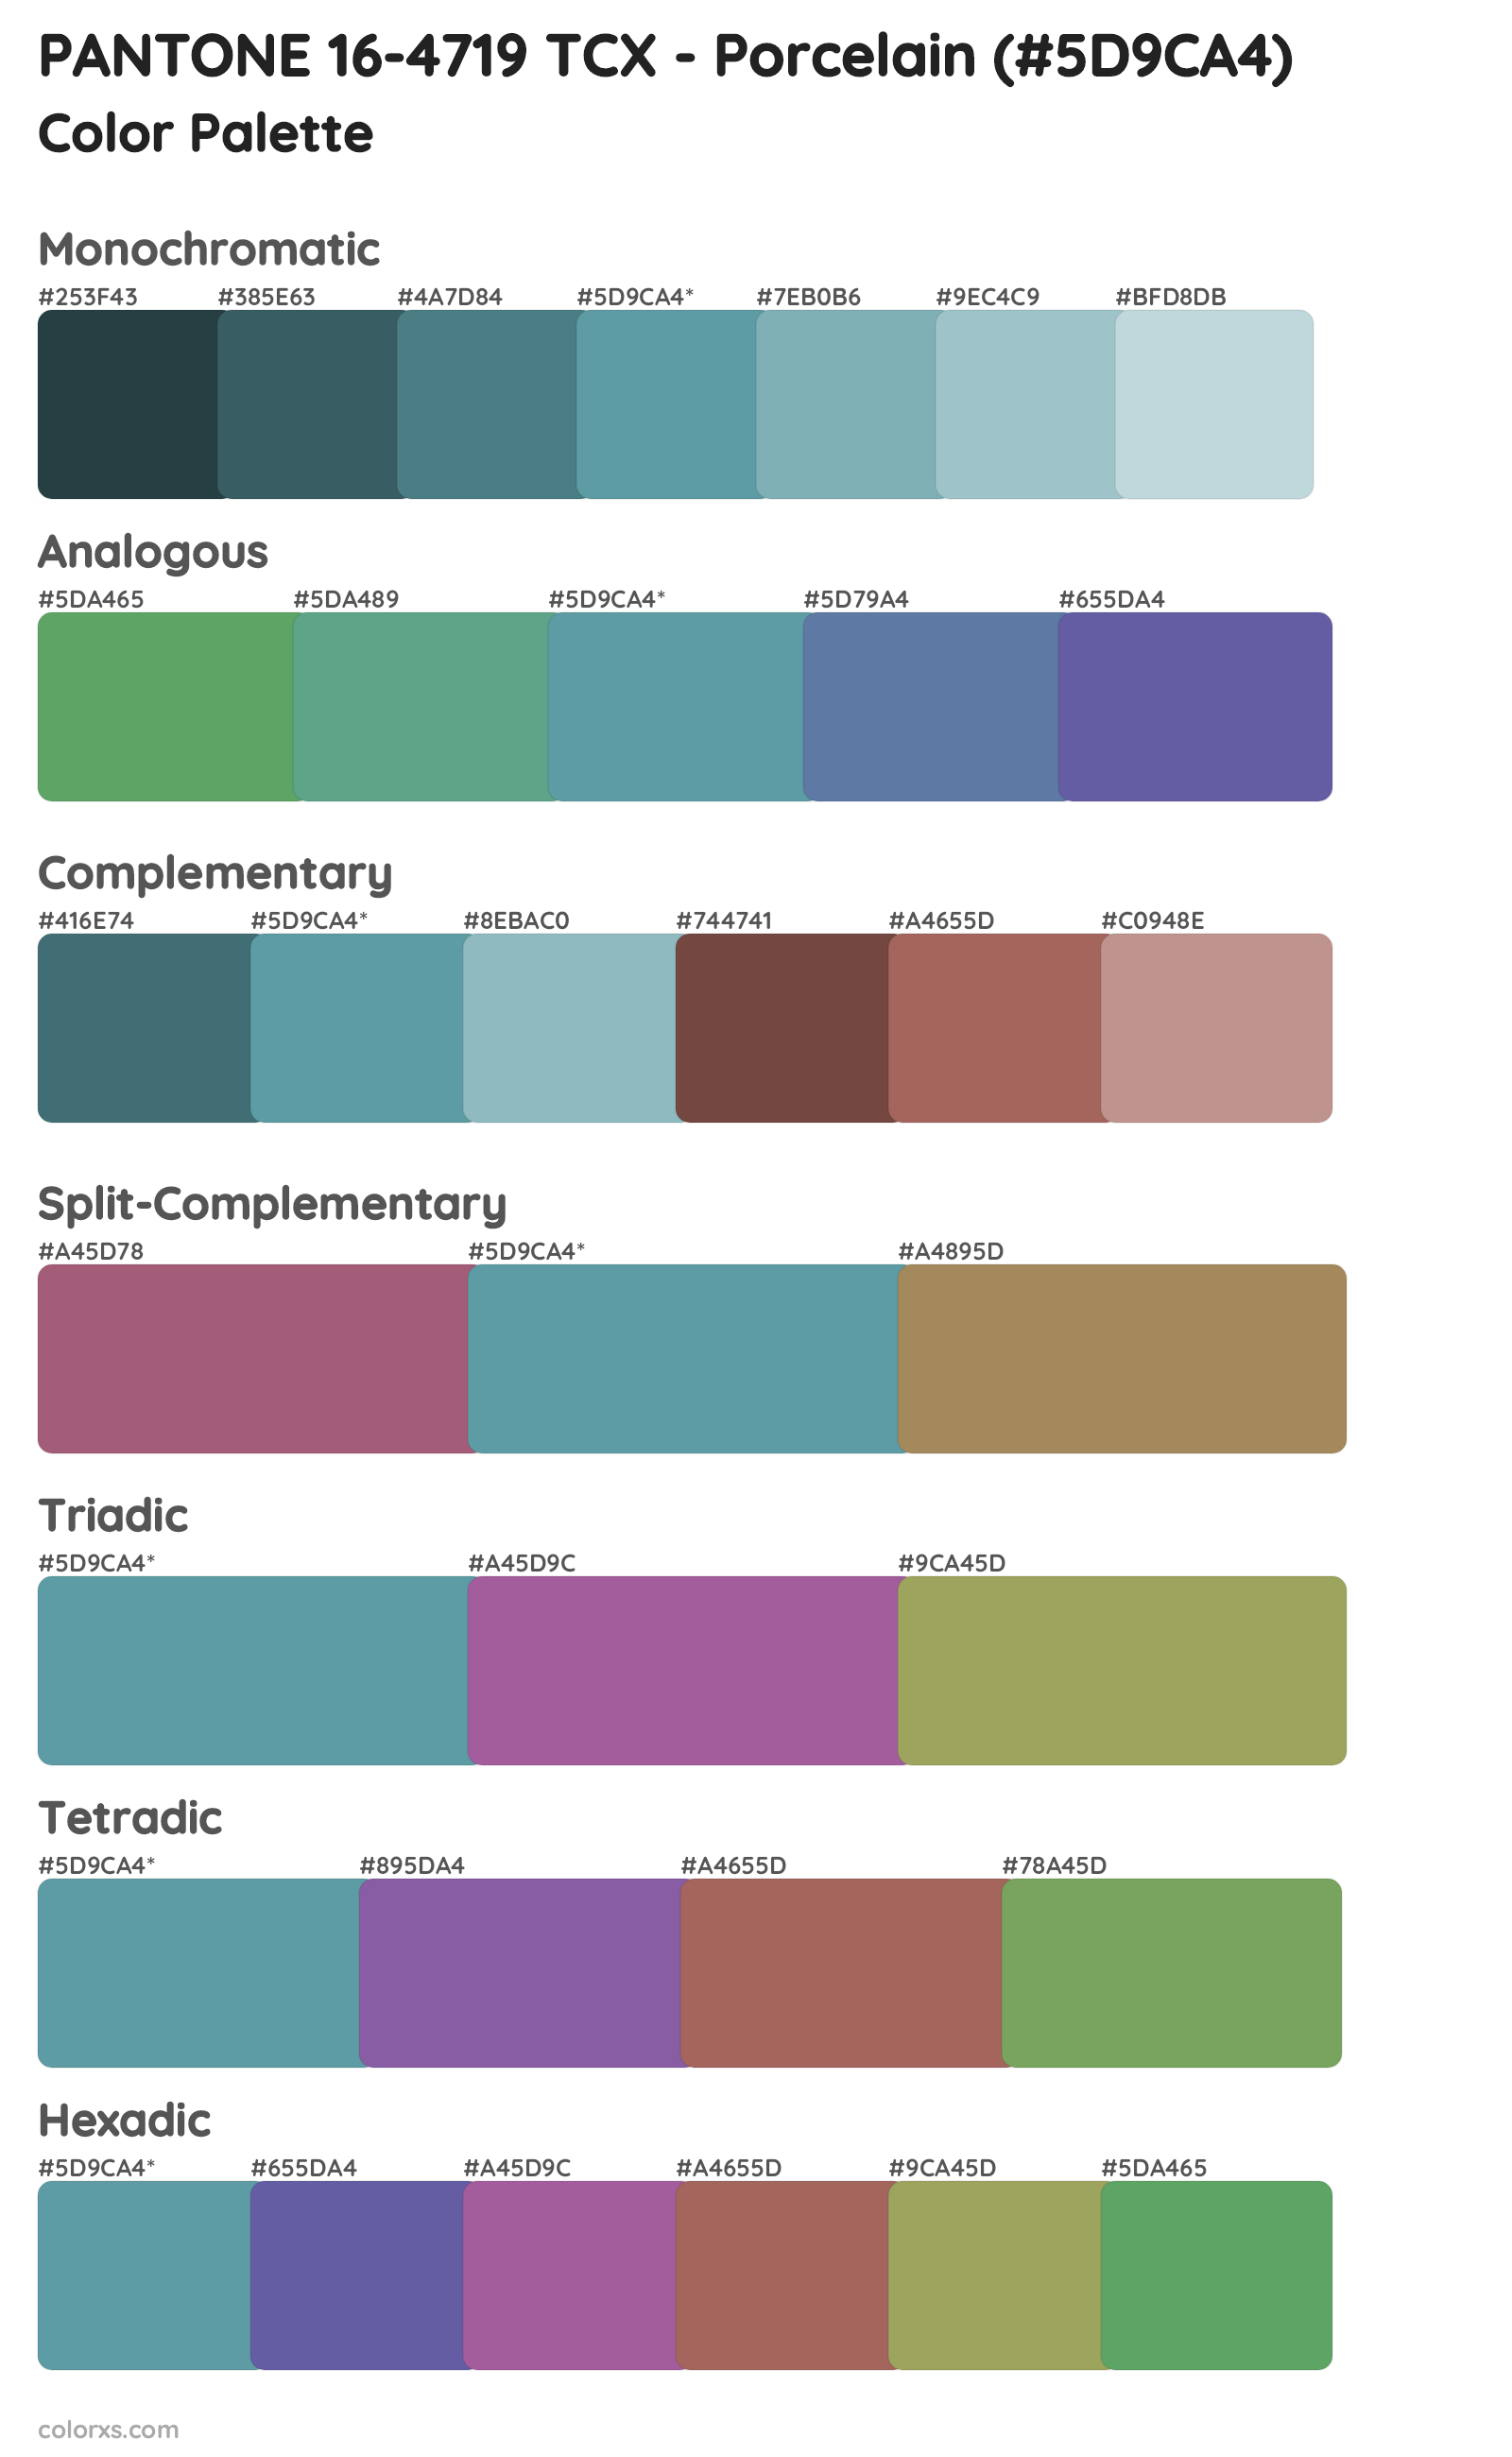 PANTONE 16-4719 TCX - Porcelain Color Scheme Palettes